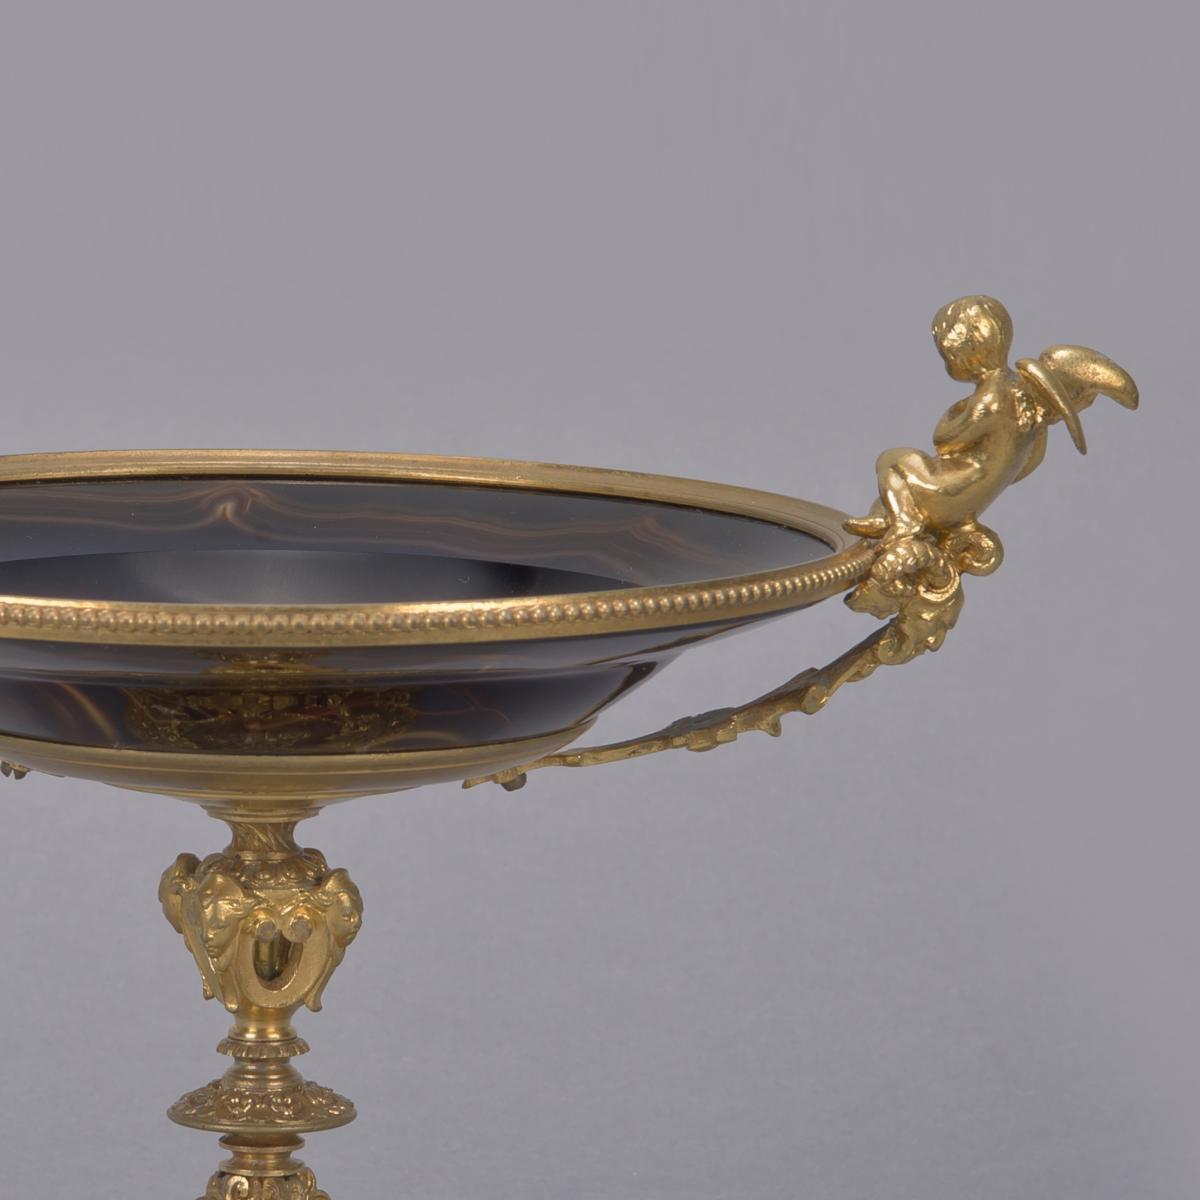 Napoleon III Gilt-Bronze and Agate Glass Tazza